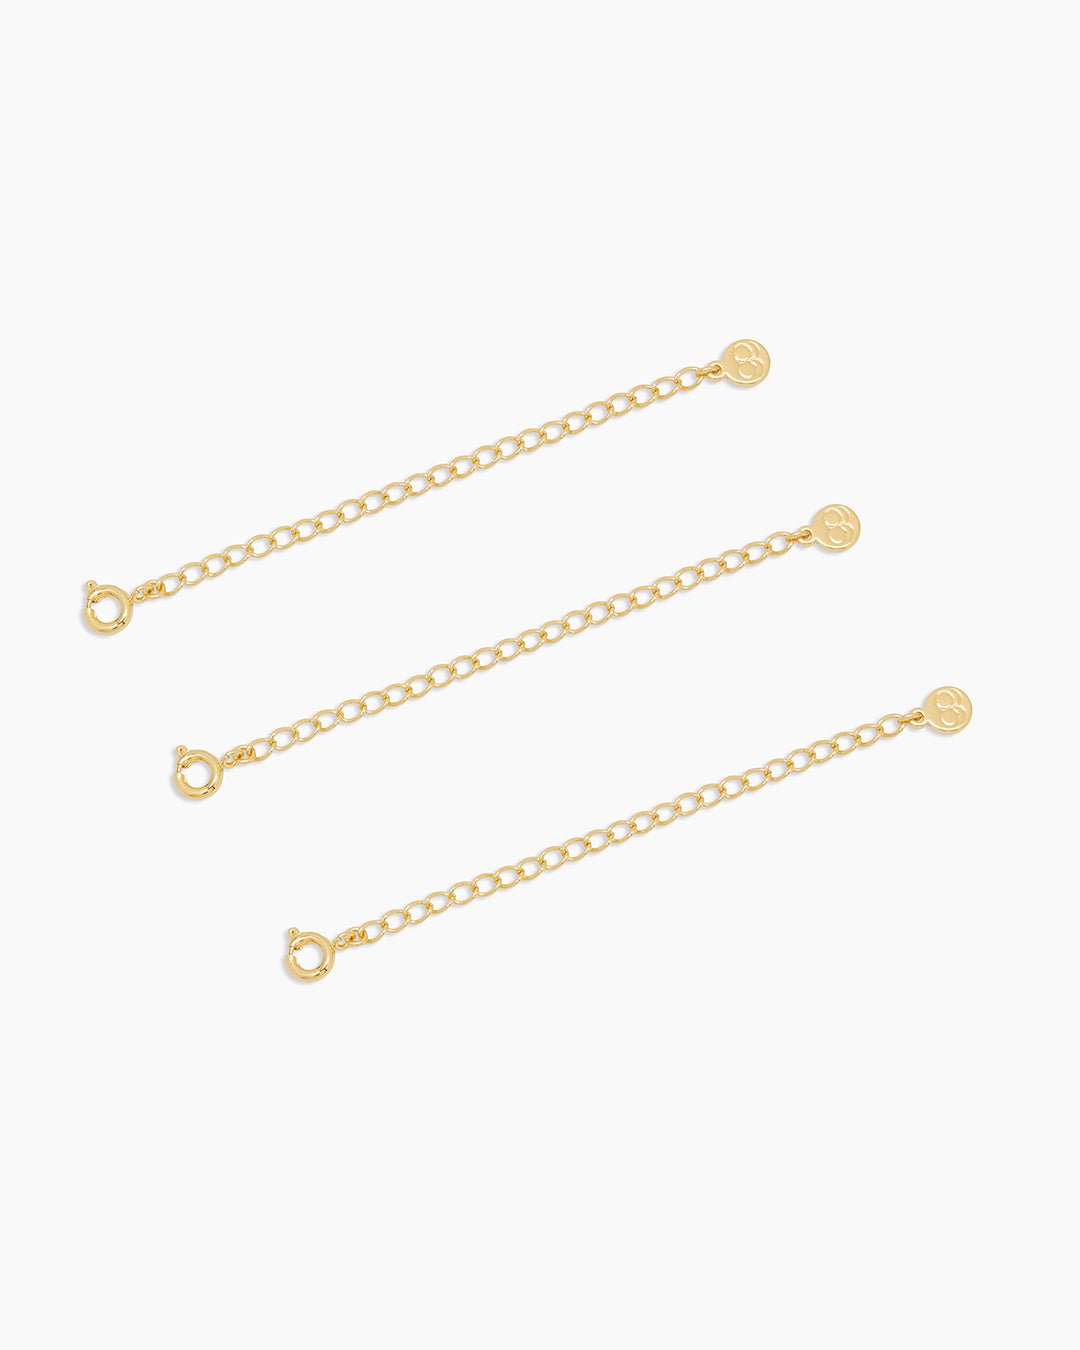 4 Rose Gold Hook Necklace Extender